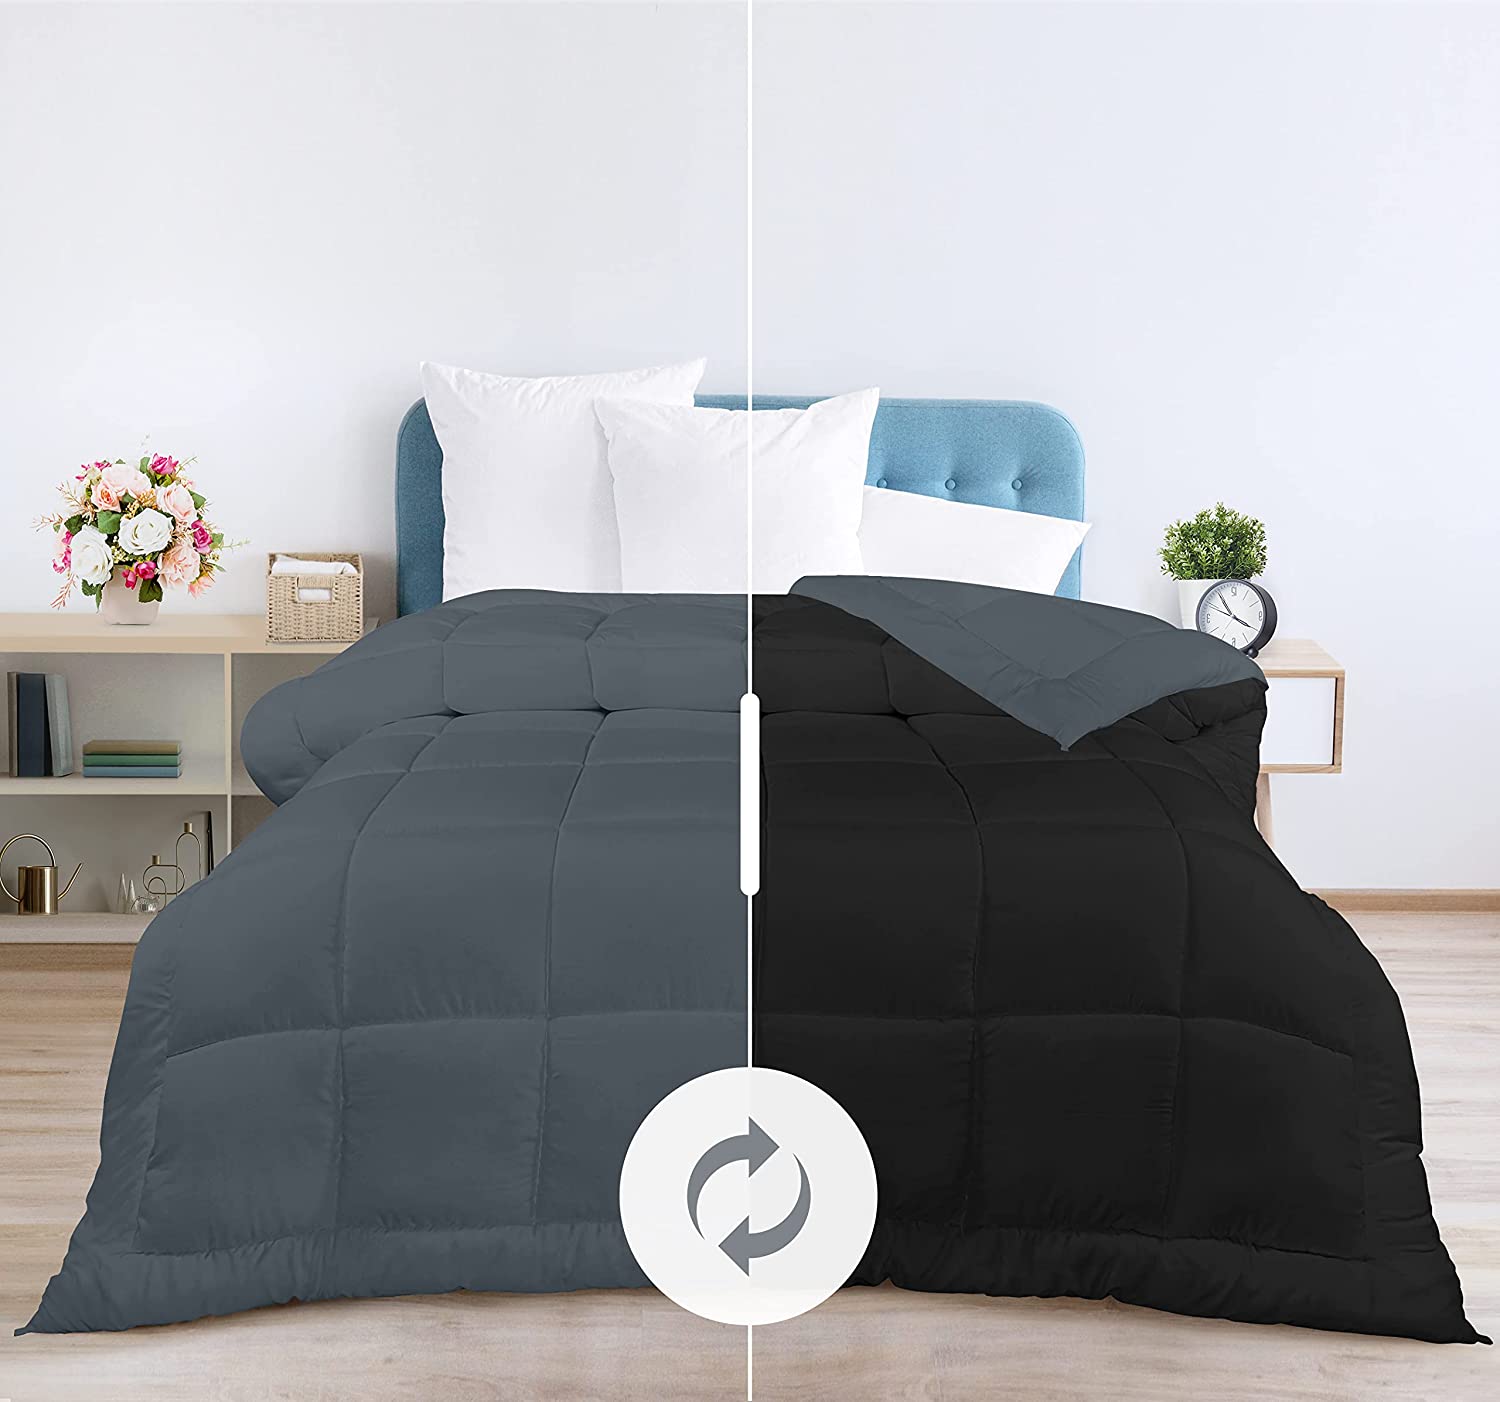 Utopia Bedding Comforter - All Season Comforters Queen Size